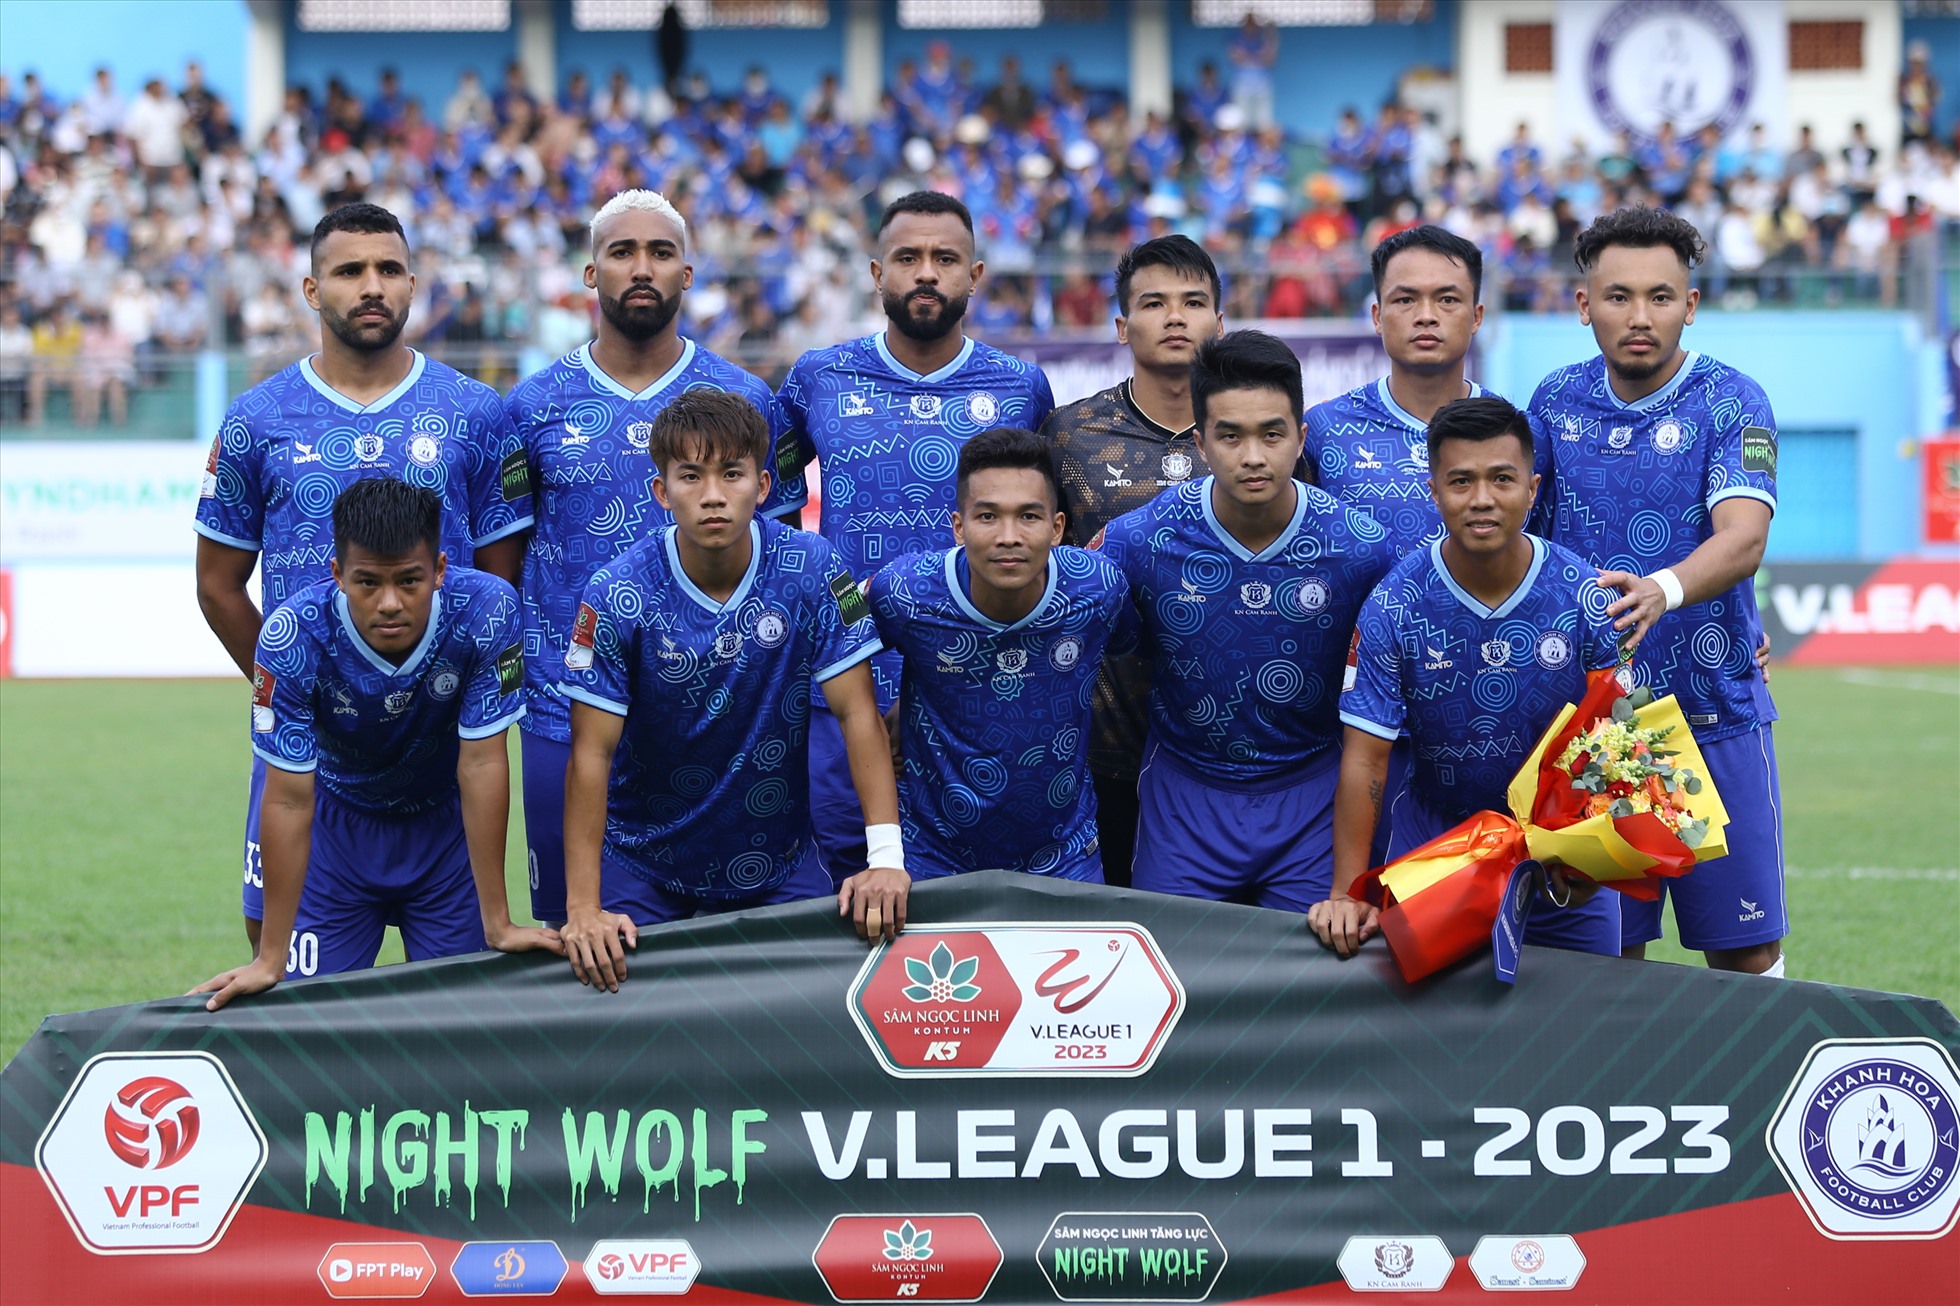 Chiều 3.2, câu lạc bộ Khánh Hòa có trận tiếp đón Thanh Hóa ở vòng 1 V.League 2023. Đây là trận đầu tiên đội bóng phố biển trở lại giải đấu cấp độ cao nhất của bóng đá Việt Nam sau 3 năm vắng bóng.